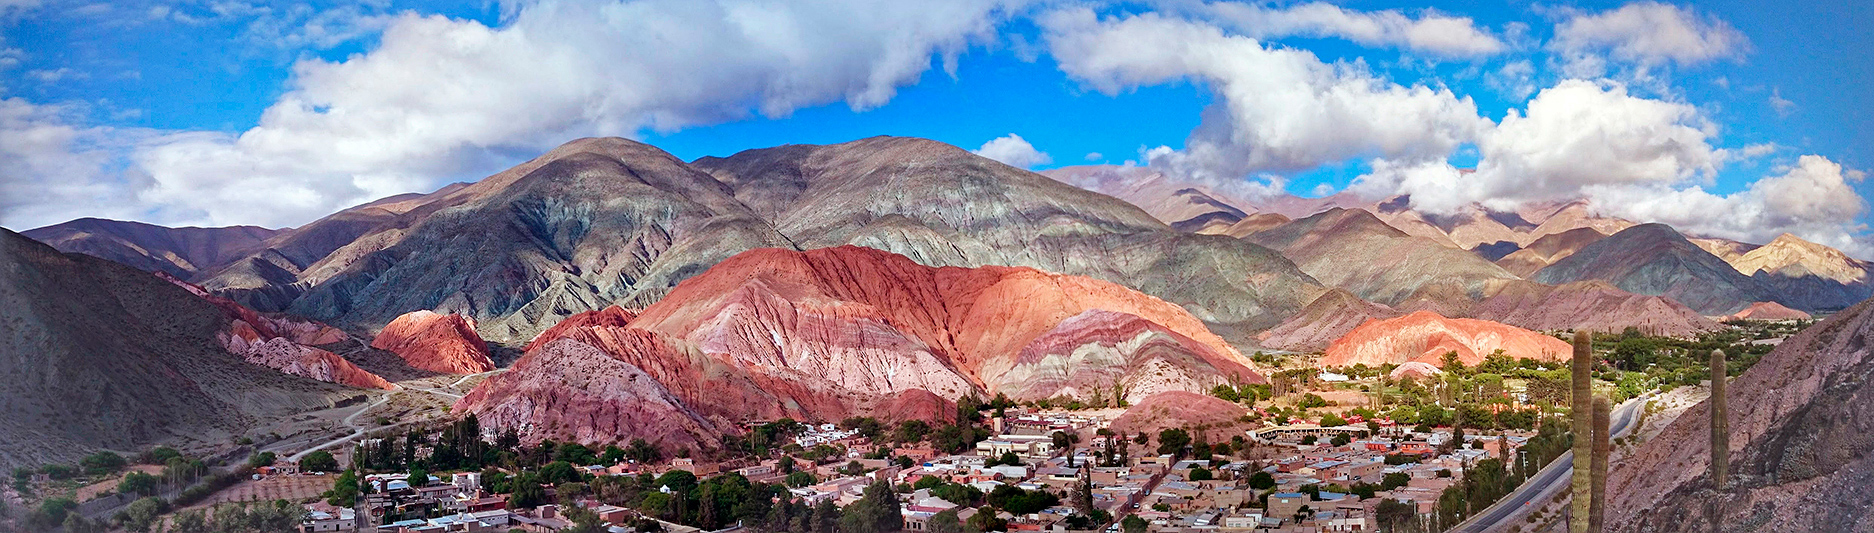 Vue panoramique des montagnes aux sept couleurs, Purmamarca, Argentine - 2014